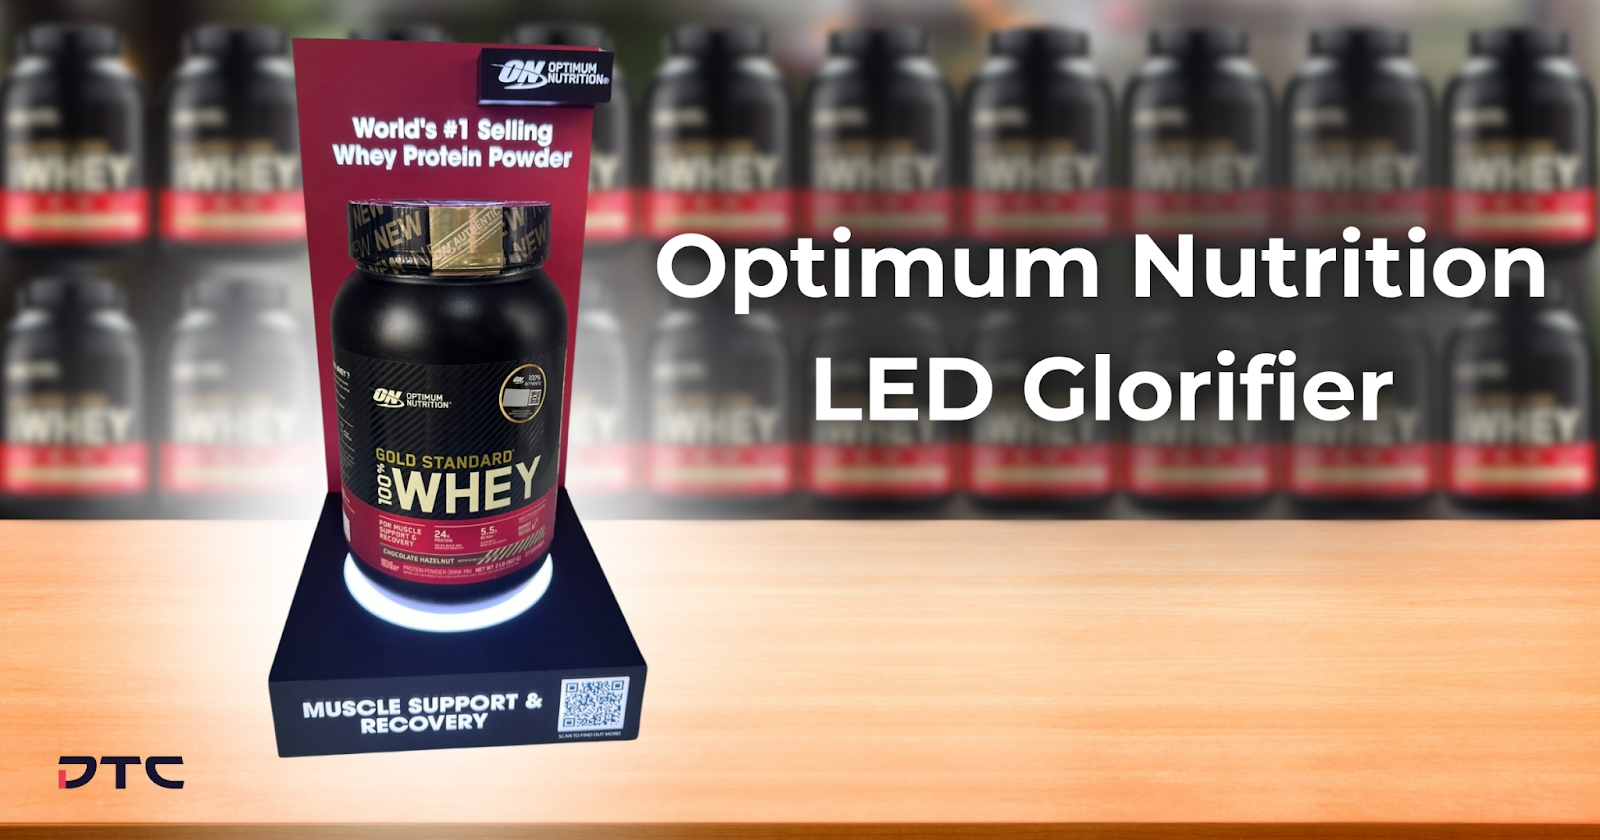 Optimum Nutrition's LED Glorifier